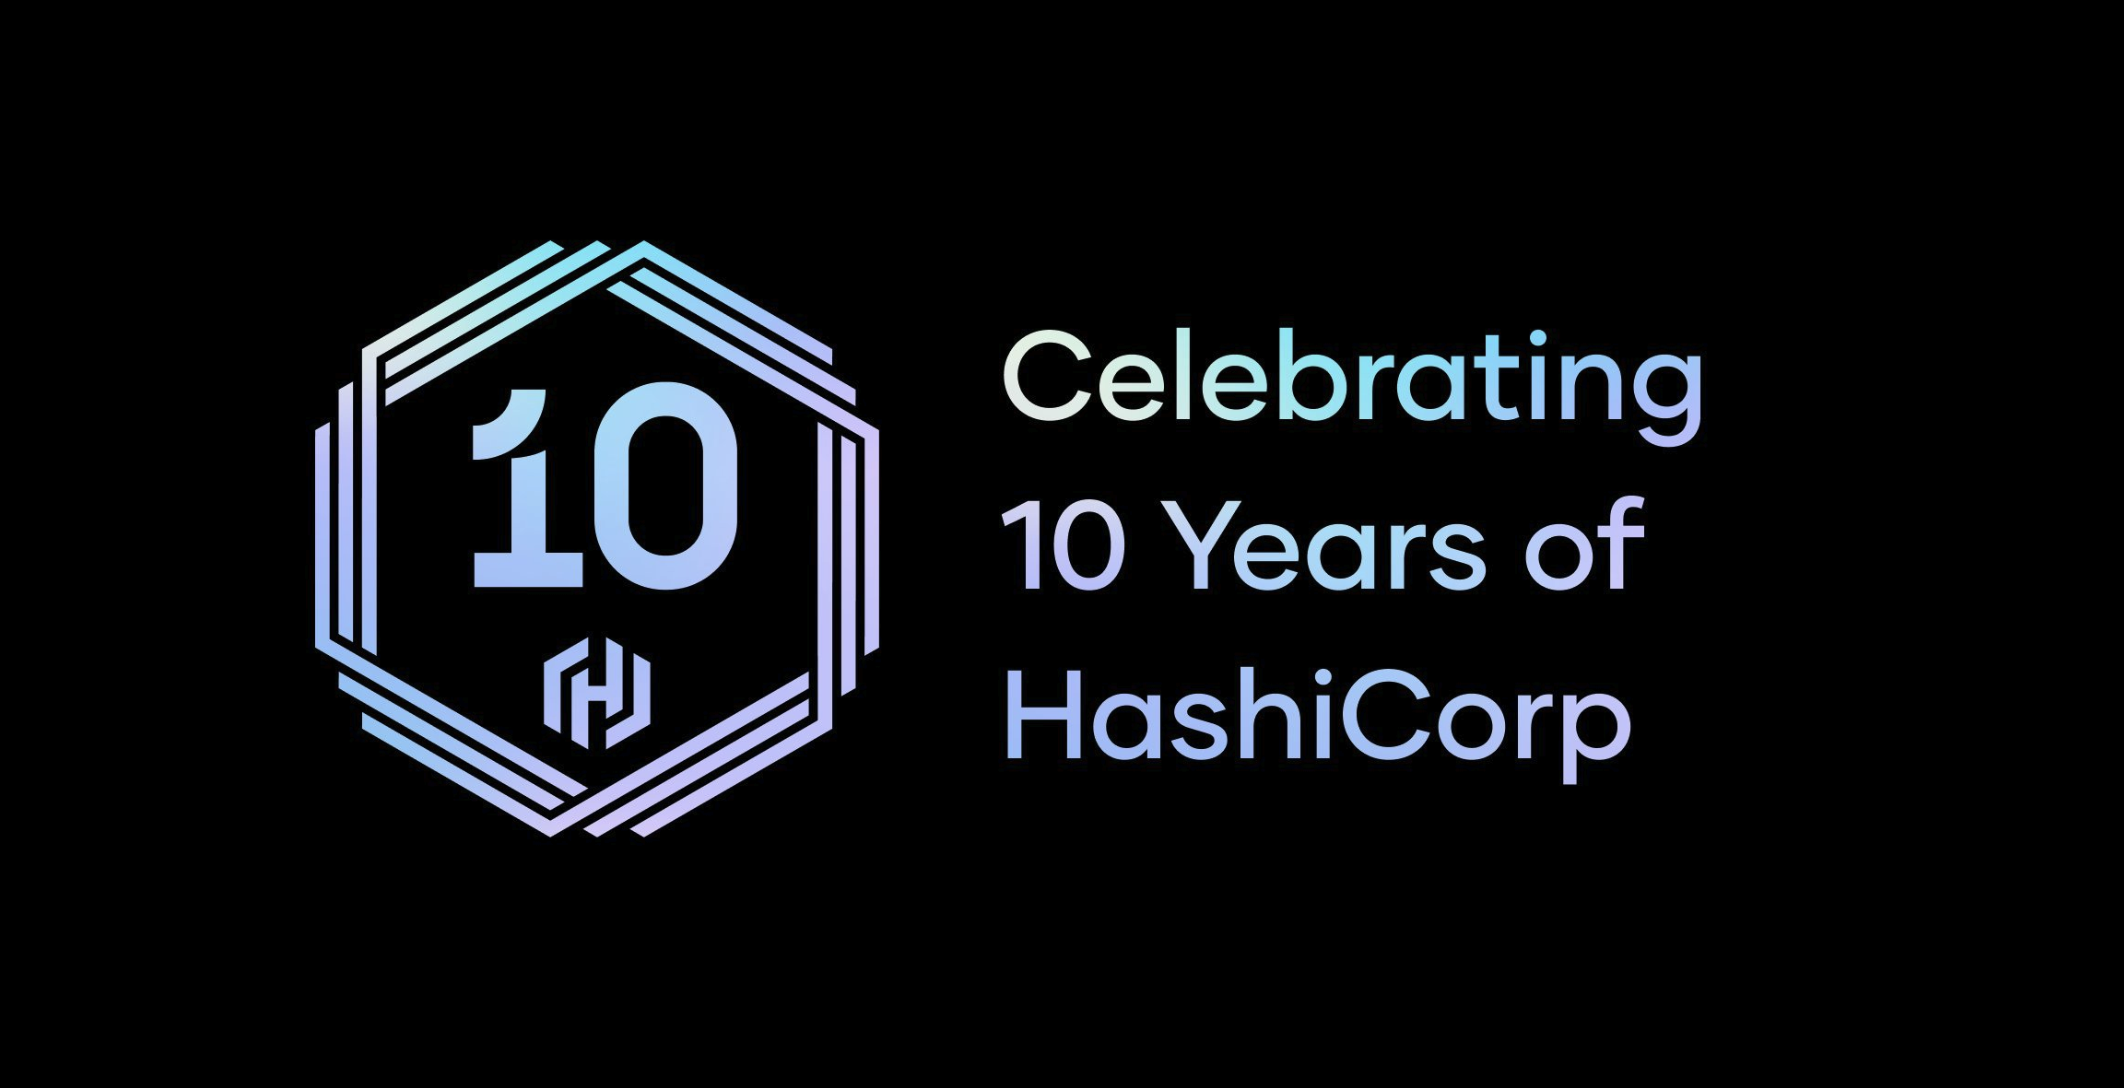 HashiCorp Celebrates 10 Years